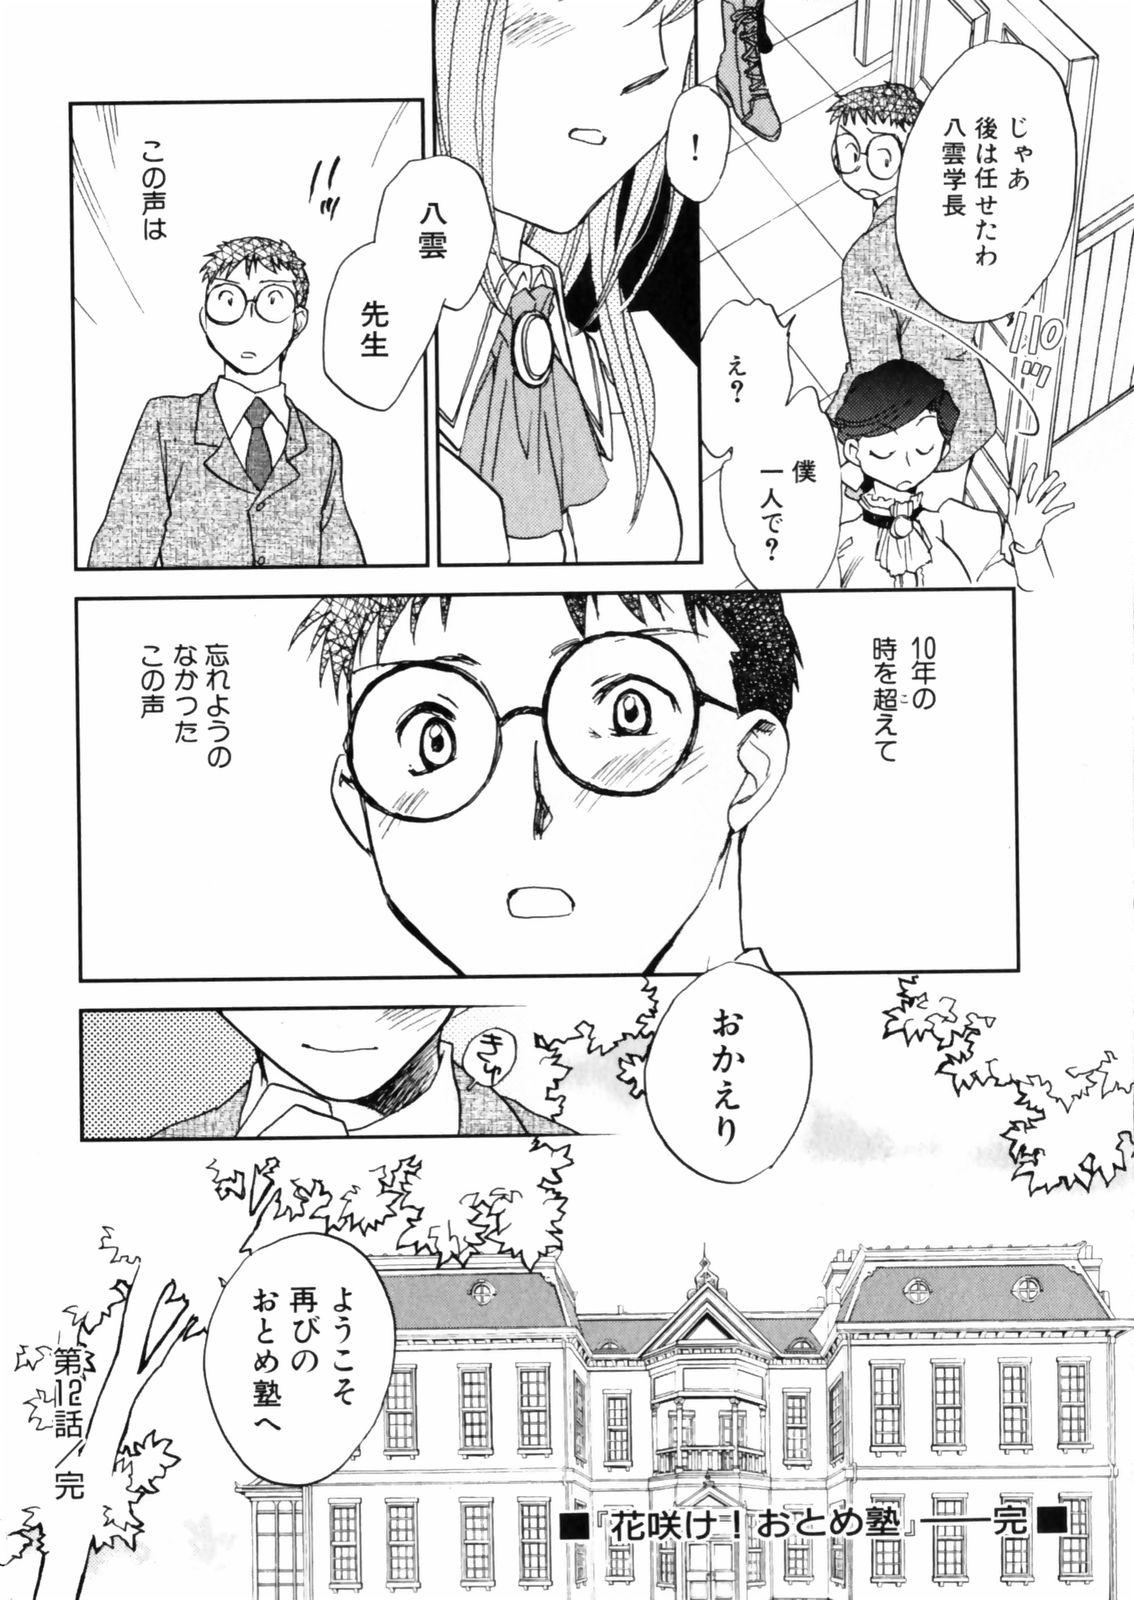 [Okano Ahiru] Hanasake ! Otome Juku (Otome Private Tutoring School) Vol.2 135